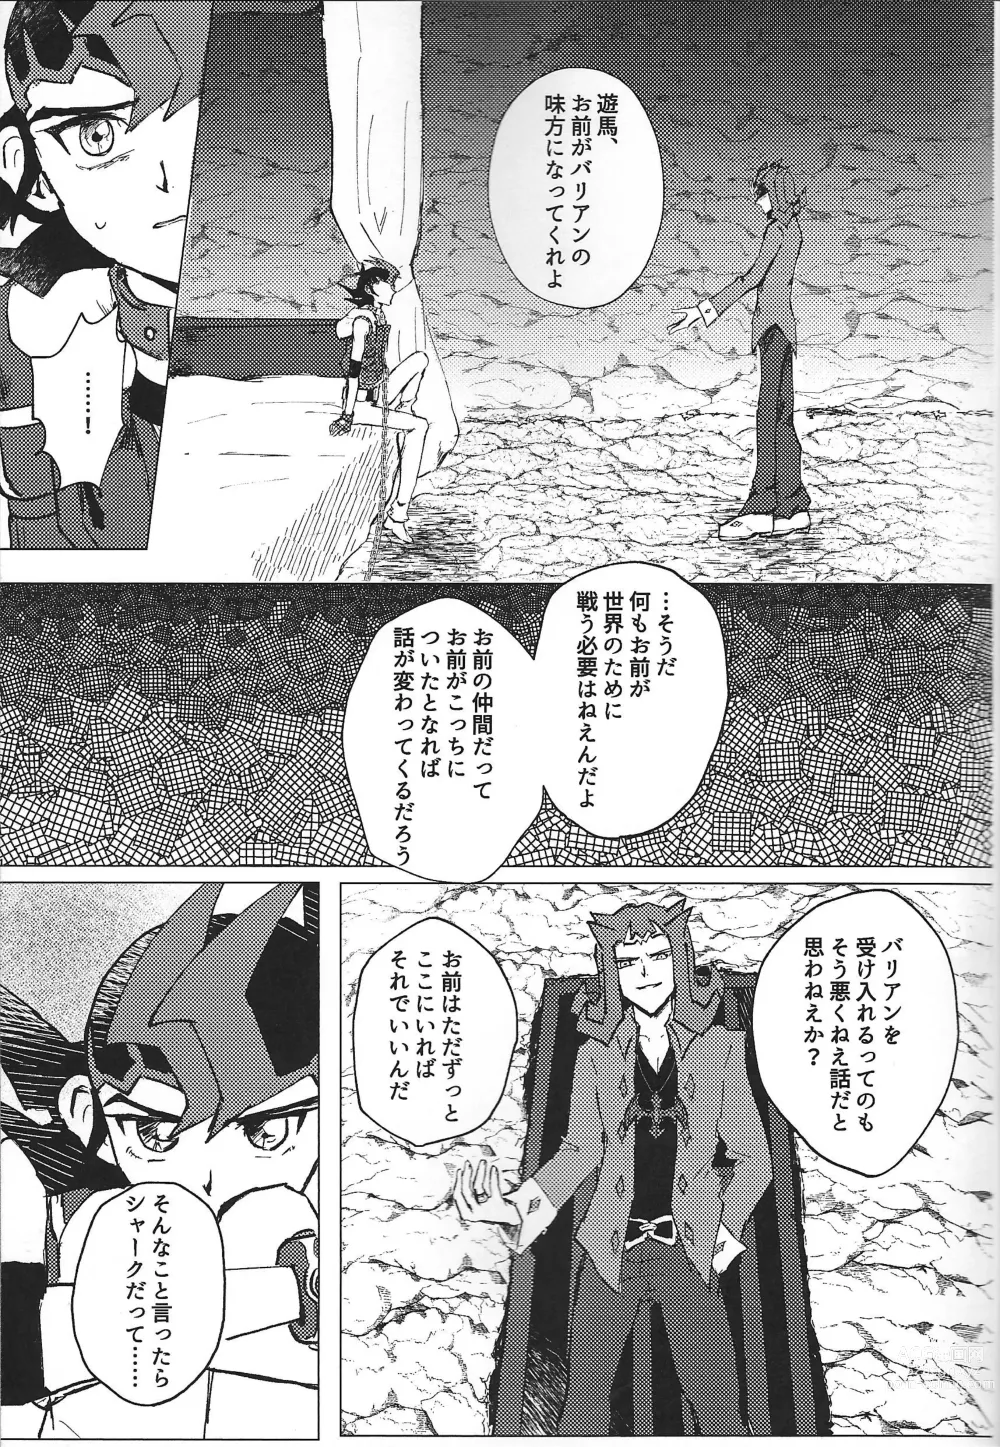 Page 9 of doujinshi ChaosPhantasma